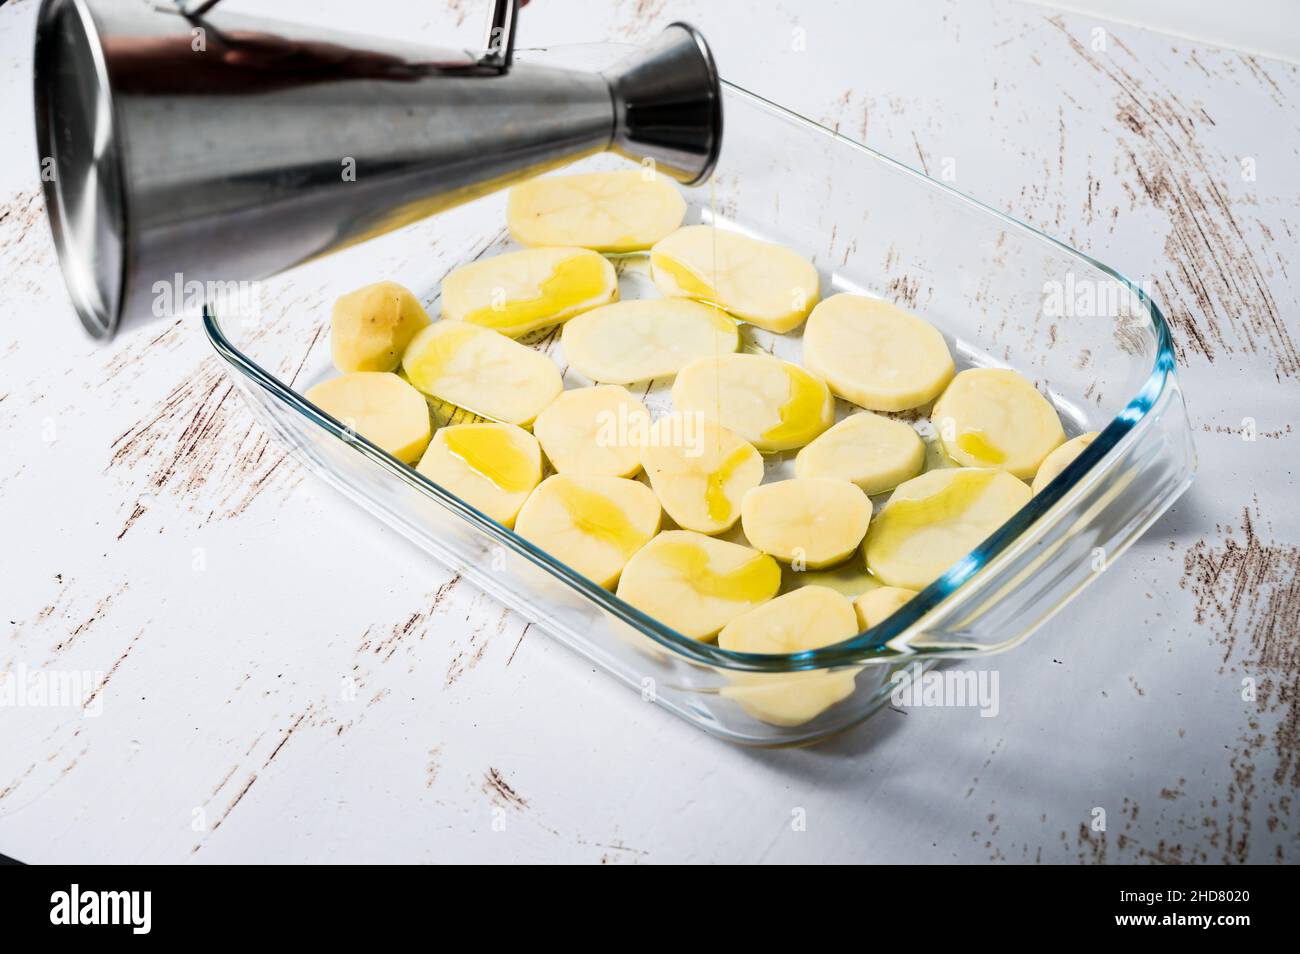 Persona irreconocible que añade aceite a una cama de patatas en un recipiente de cristal para preparar un cava de pollo en el horno. Foto de stock